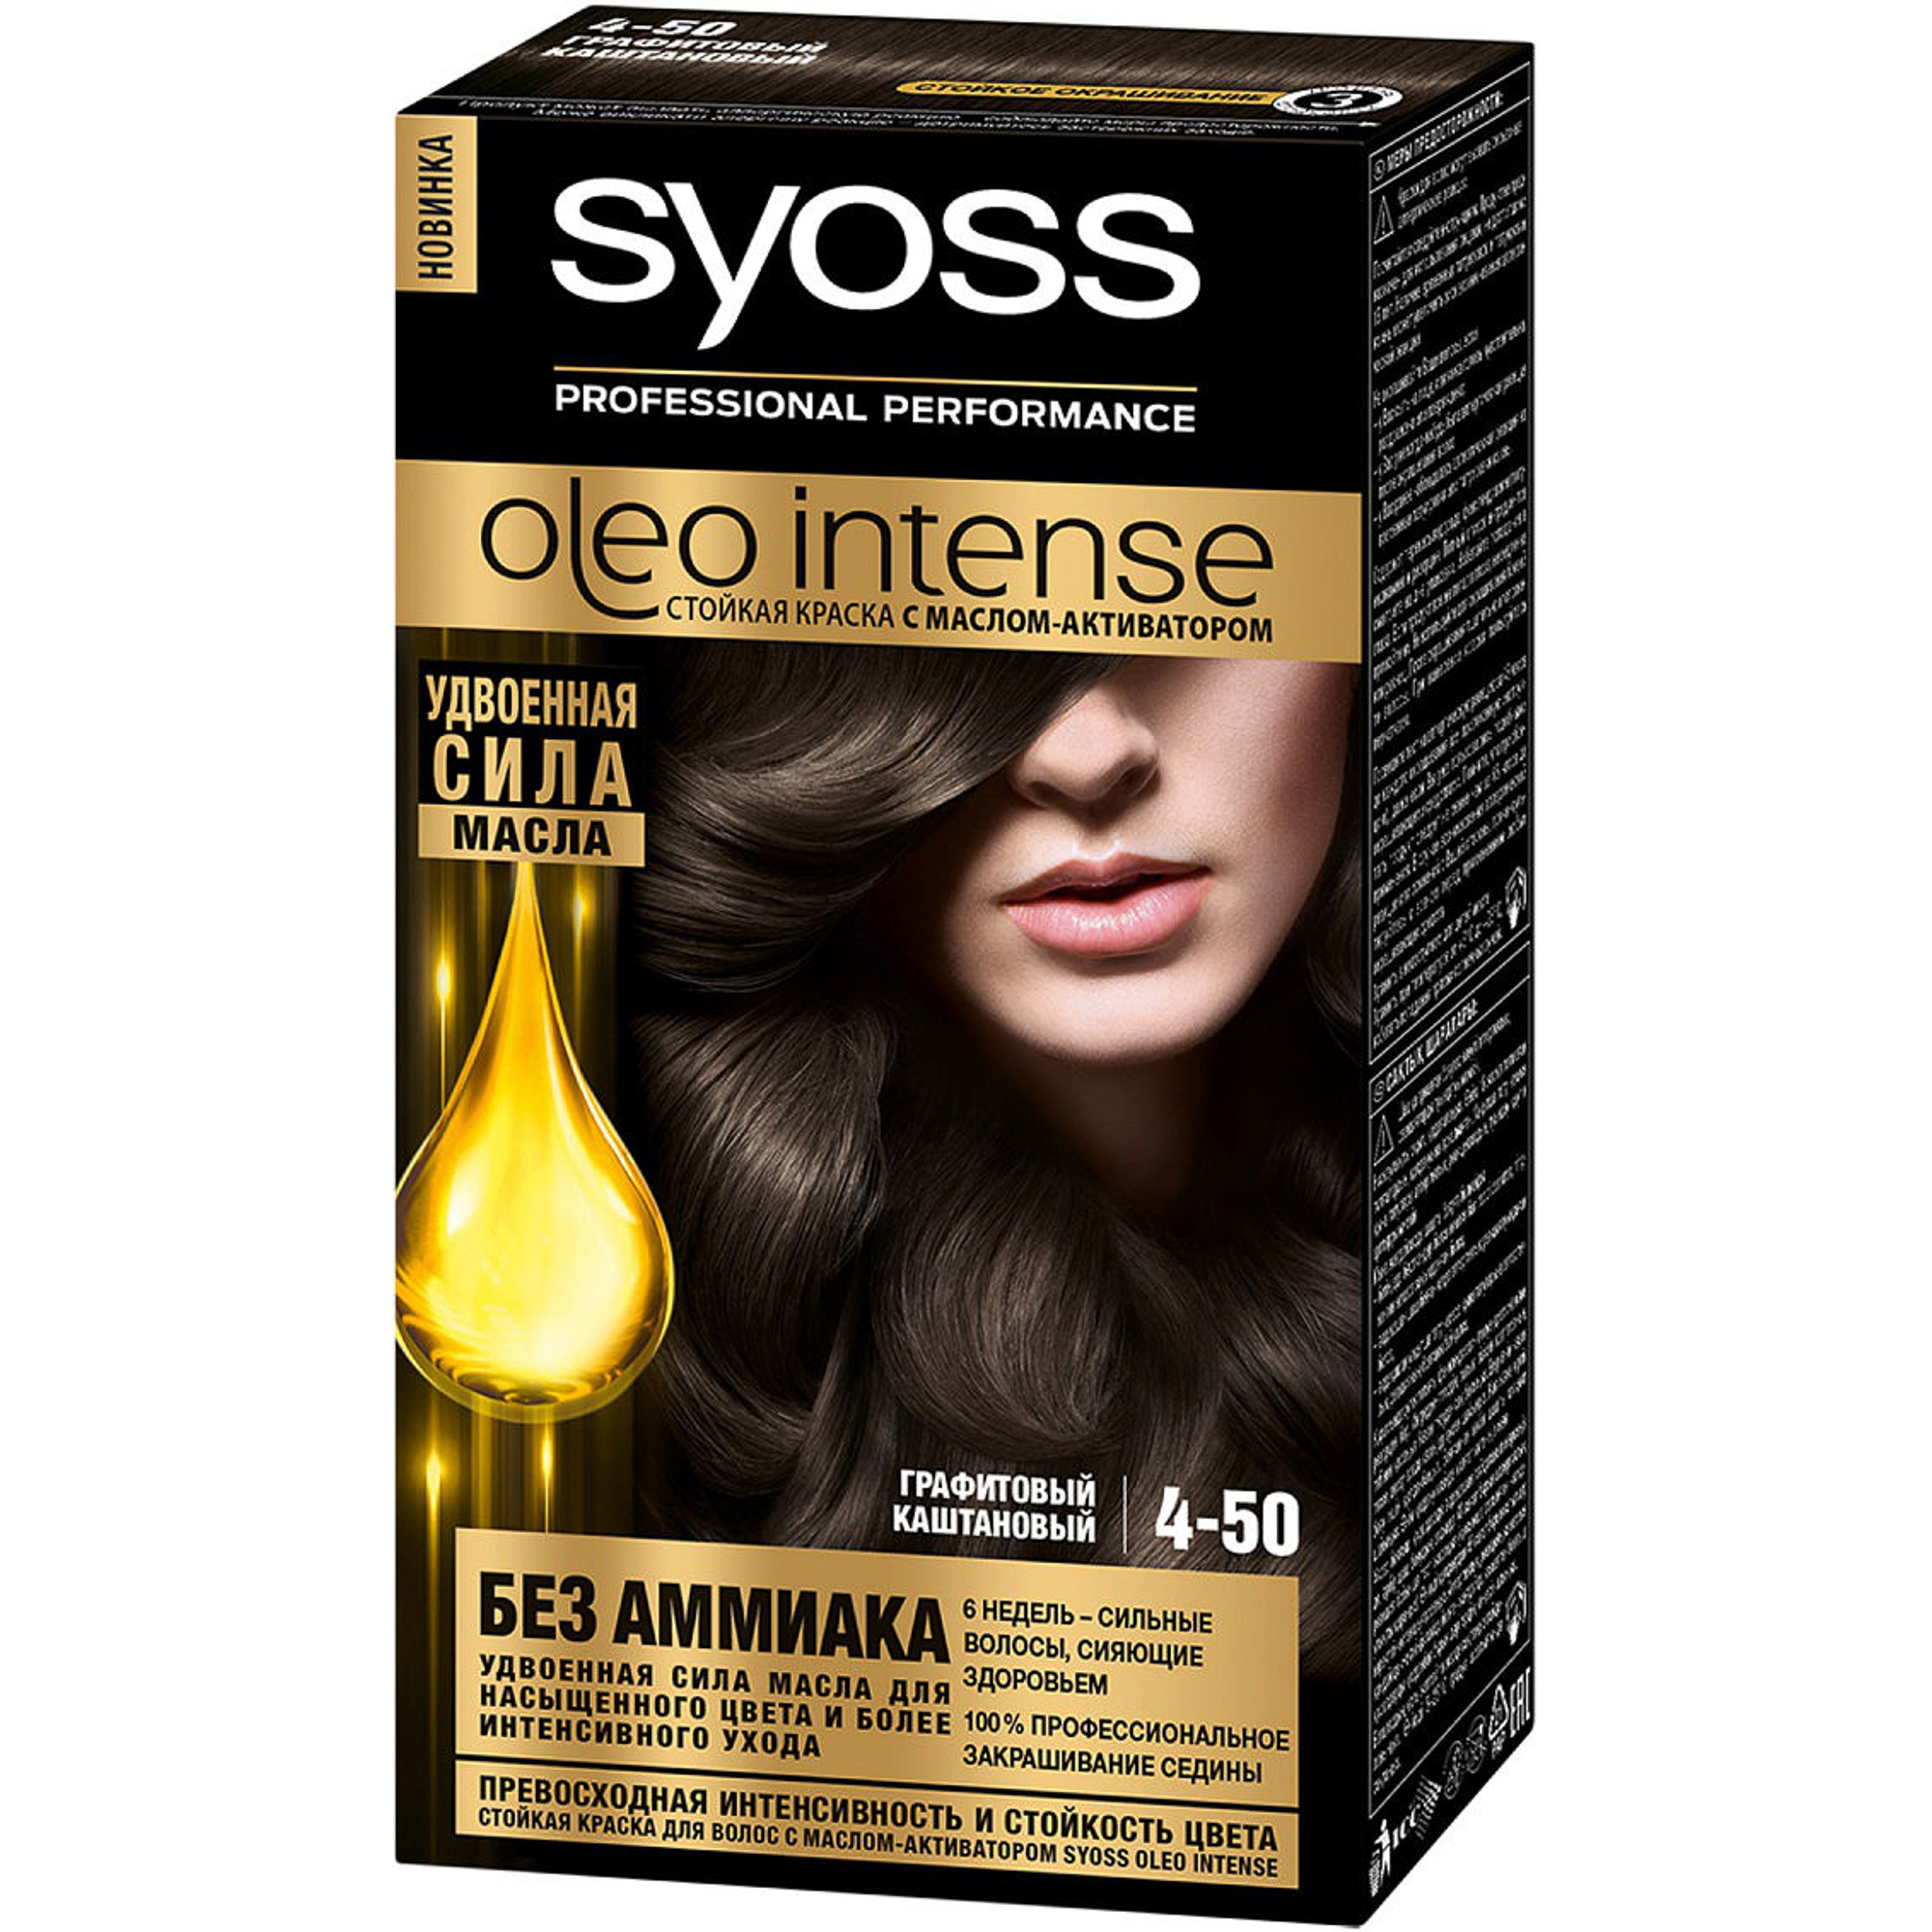 Краска для волос Syoss Oleo Intense 4-50 Графитовый каштановый косметика для мамы syoss oleo intense краска для волос 4 50 графитовый каштановый